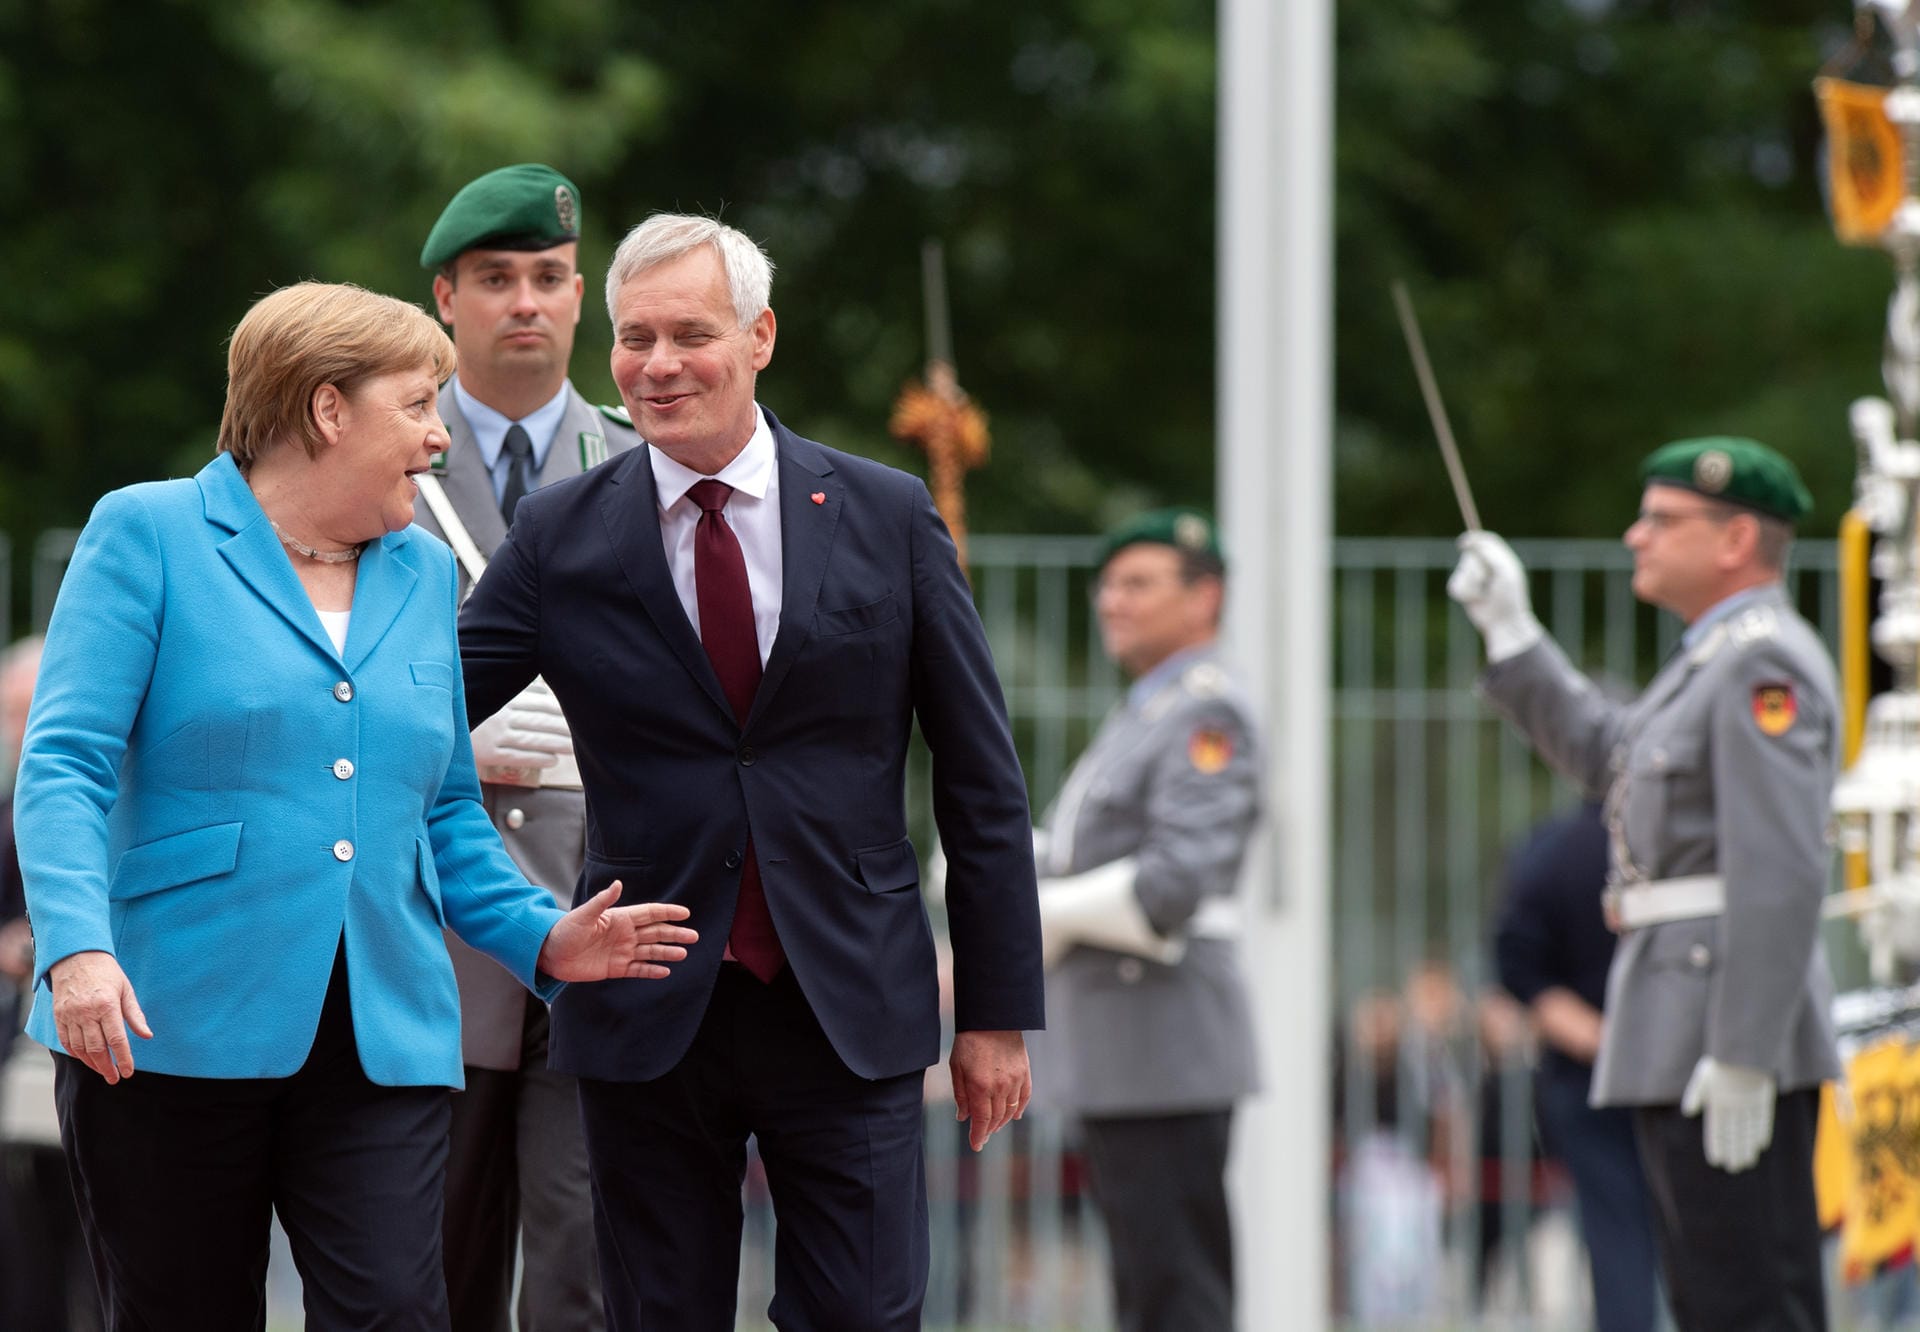 Sobald sich Merkel anschließend bewegte, hörte das Zittern auf.